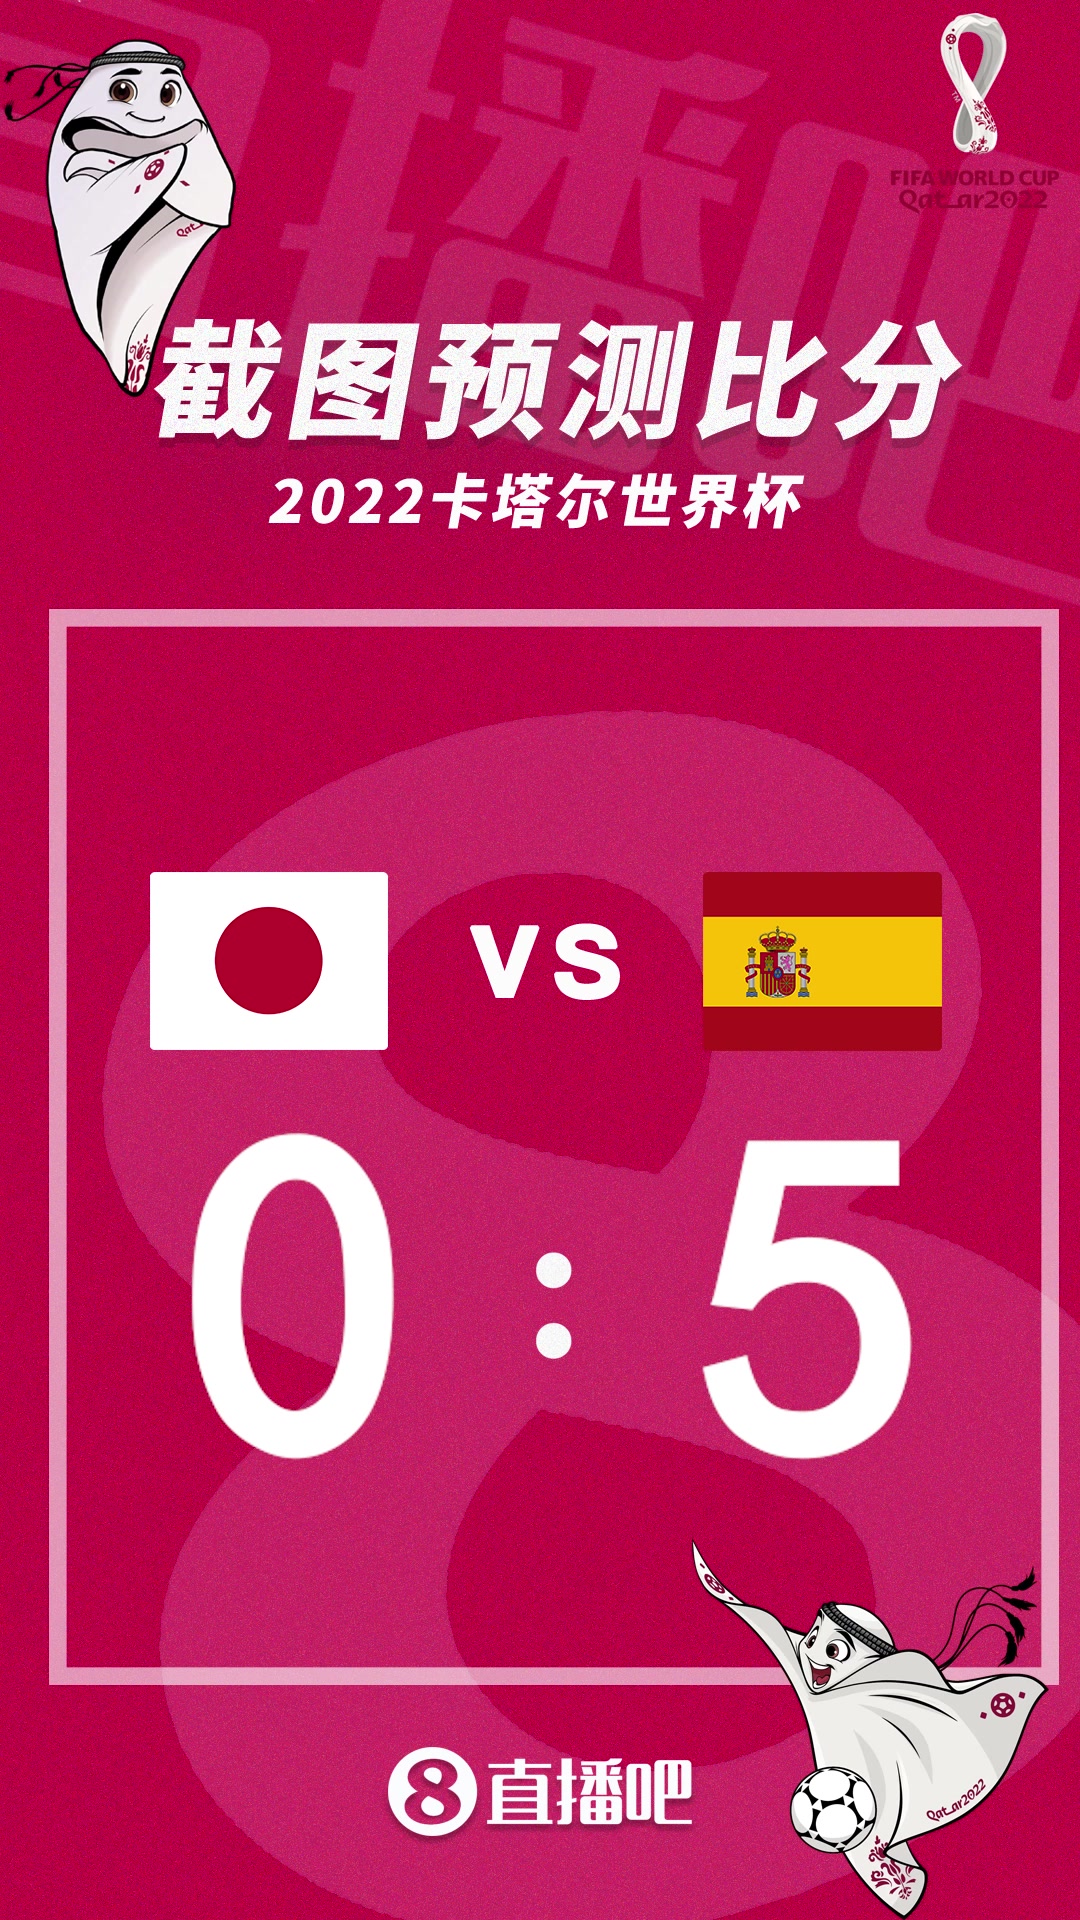 生死战！截图预测日本vs西班牙比分